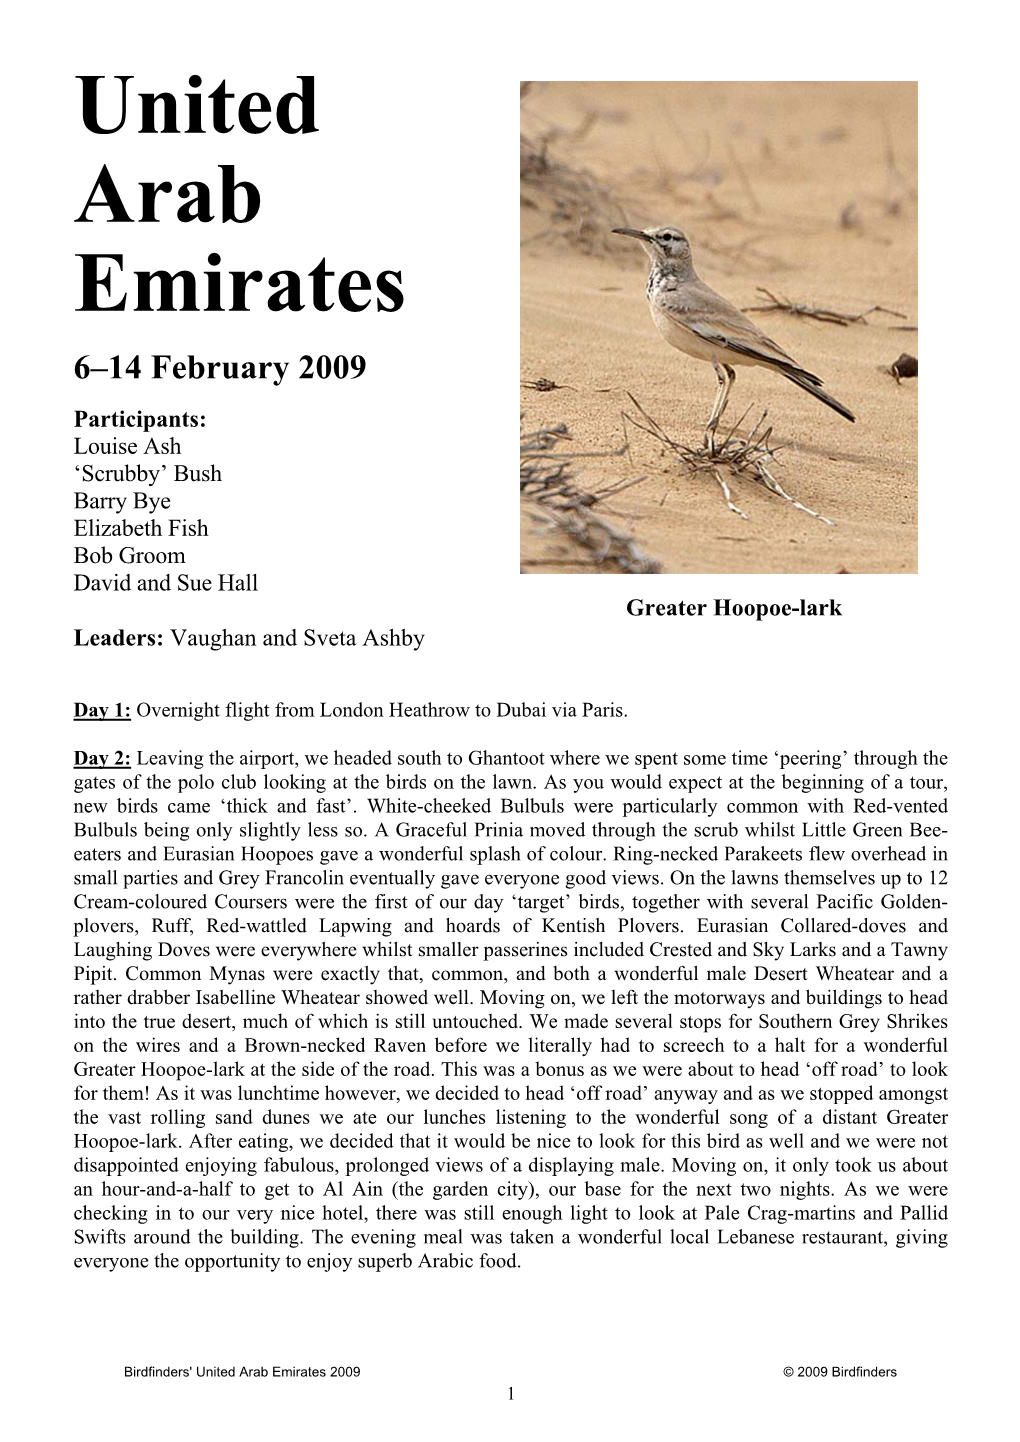 United Arab Emirates 2009 © 2009 Birdfinders 1